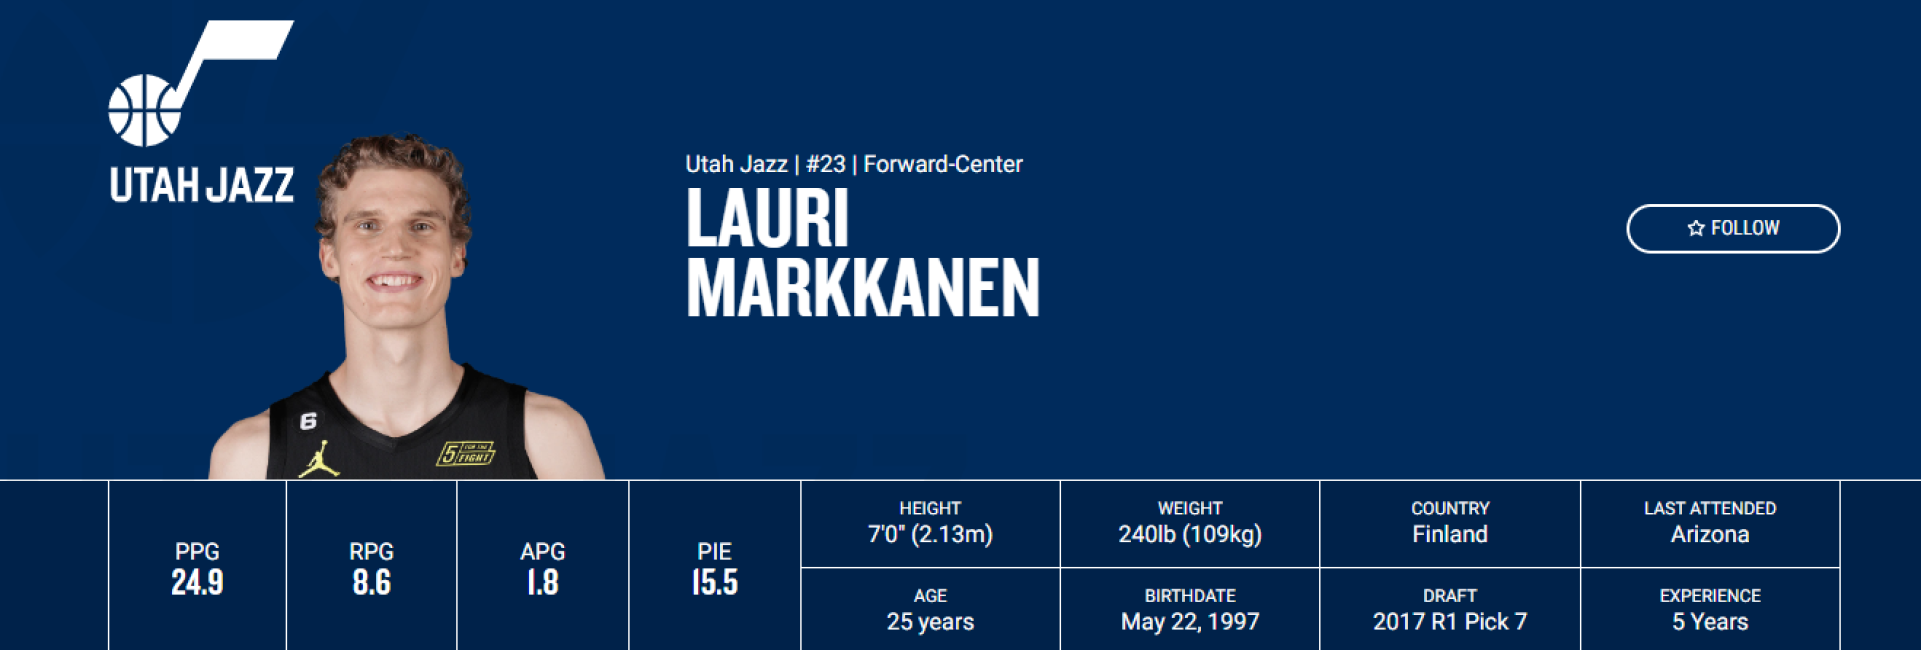 Lauri Markkanen está en modo superestrella en esta temporada 2022/23. / Fuente: NBA.com